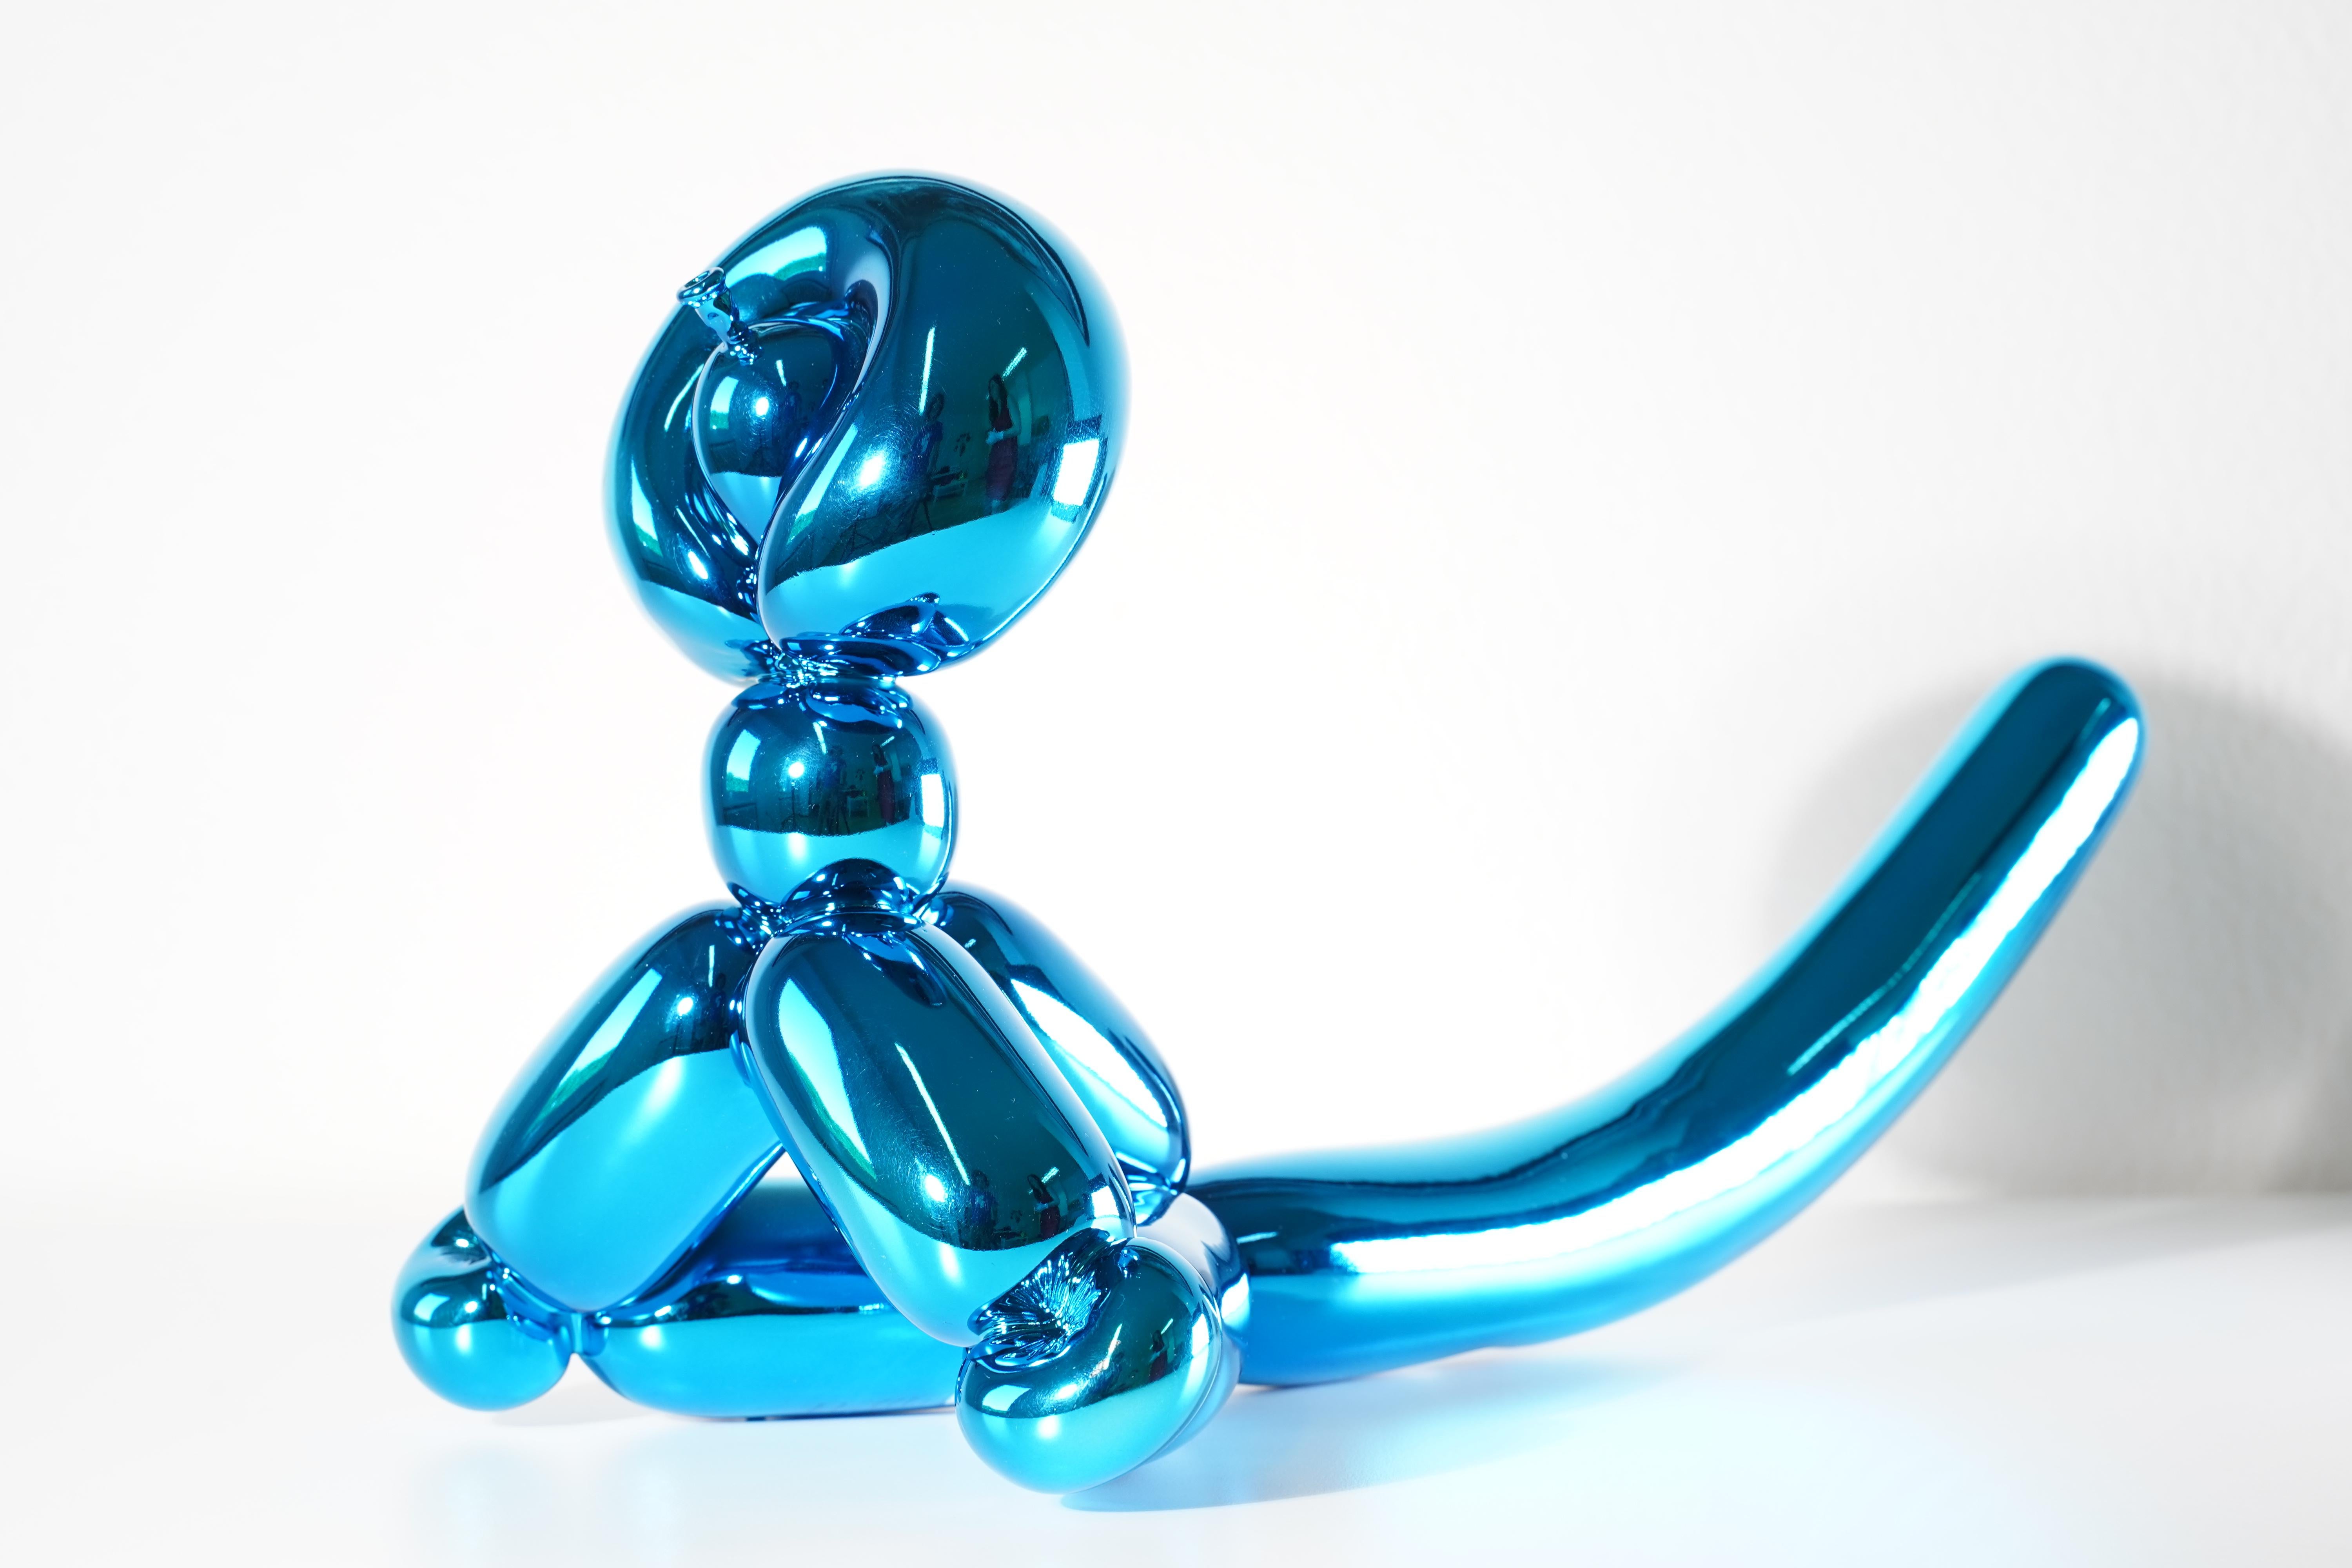 Balloon Monkey (Blue) - Jeff Koons, 21e siècle, contemporain, porcelaine, sculpture, décoration, édition limitée

Porcelaine de Limoges avec revêtement chromatique métallisé
Edition de 999
Signé et numéroté
En parfait état, tel qu'il a été acquis